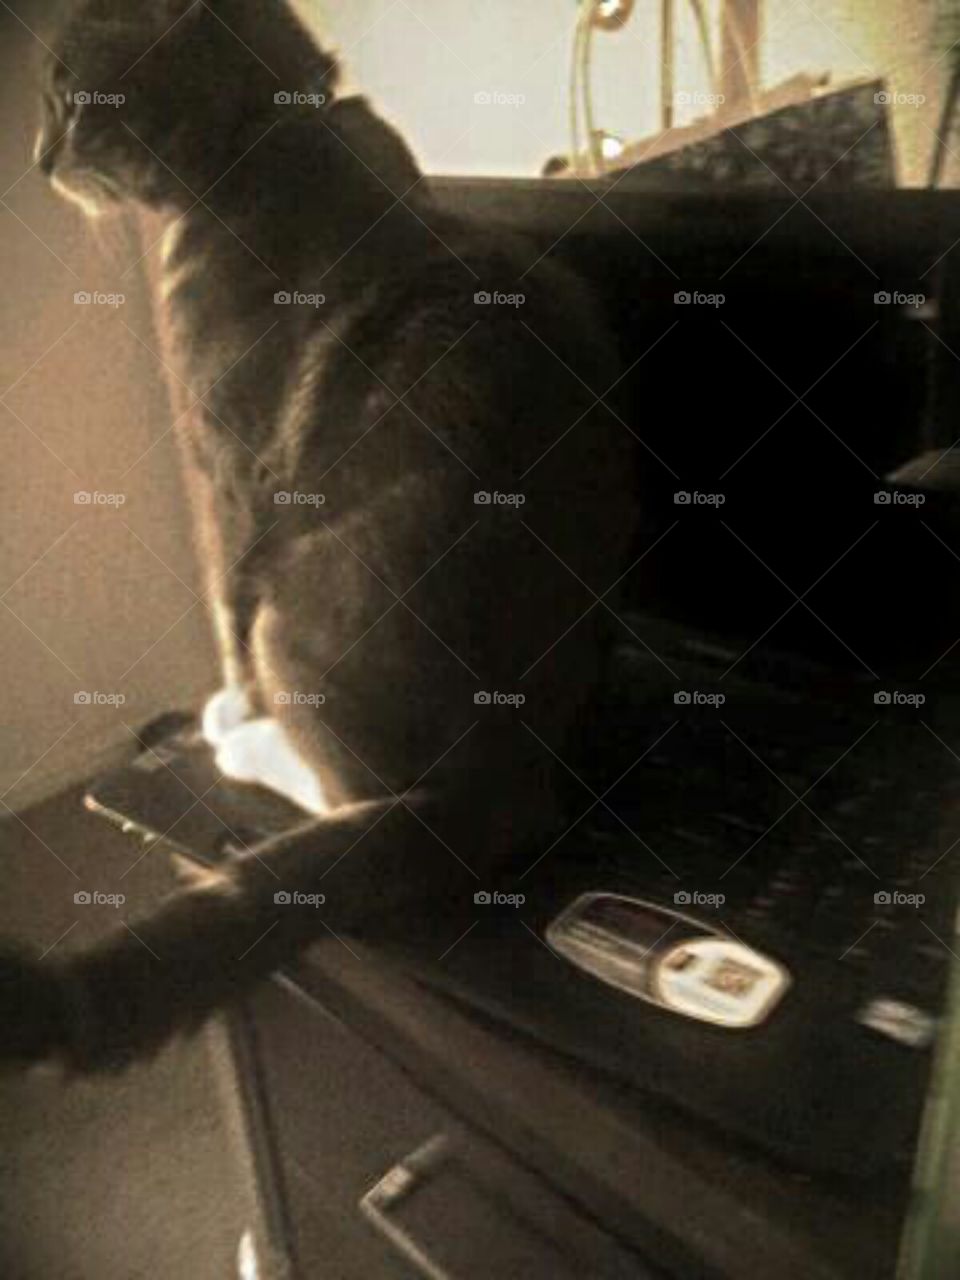 Our kitty, Wisdom, on laptop XD